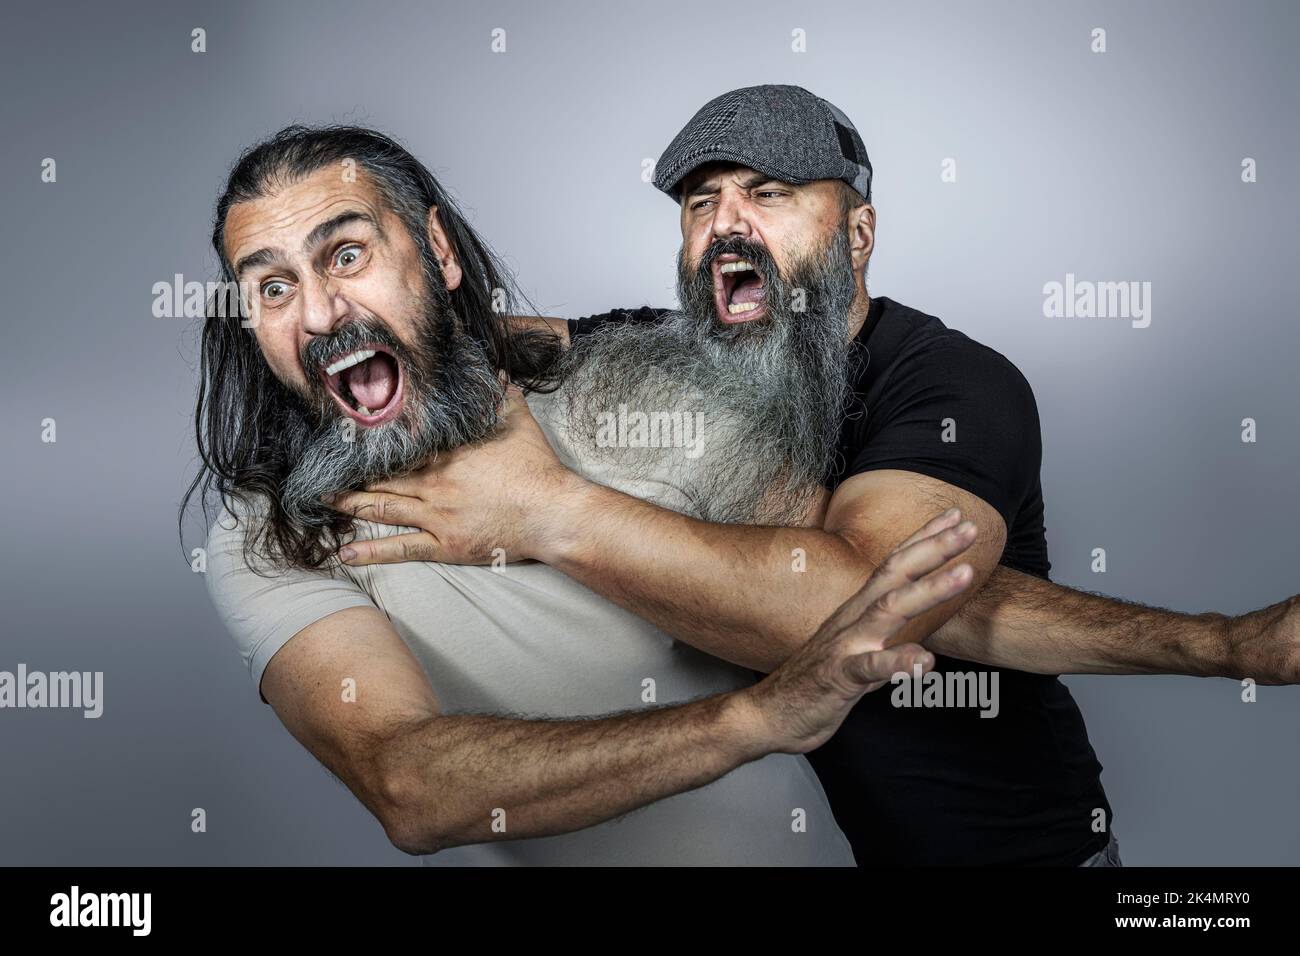 brawl between unshaven men studio shot Stock Photo